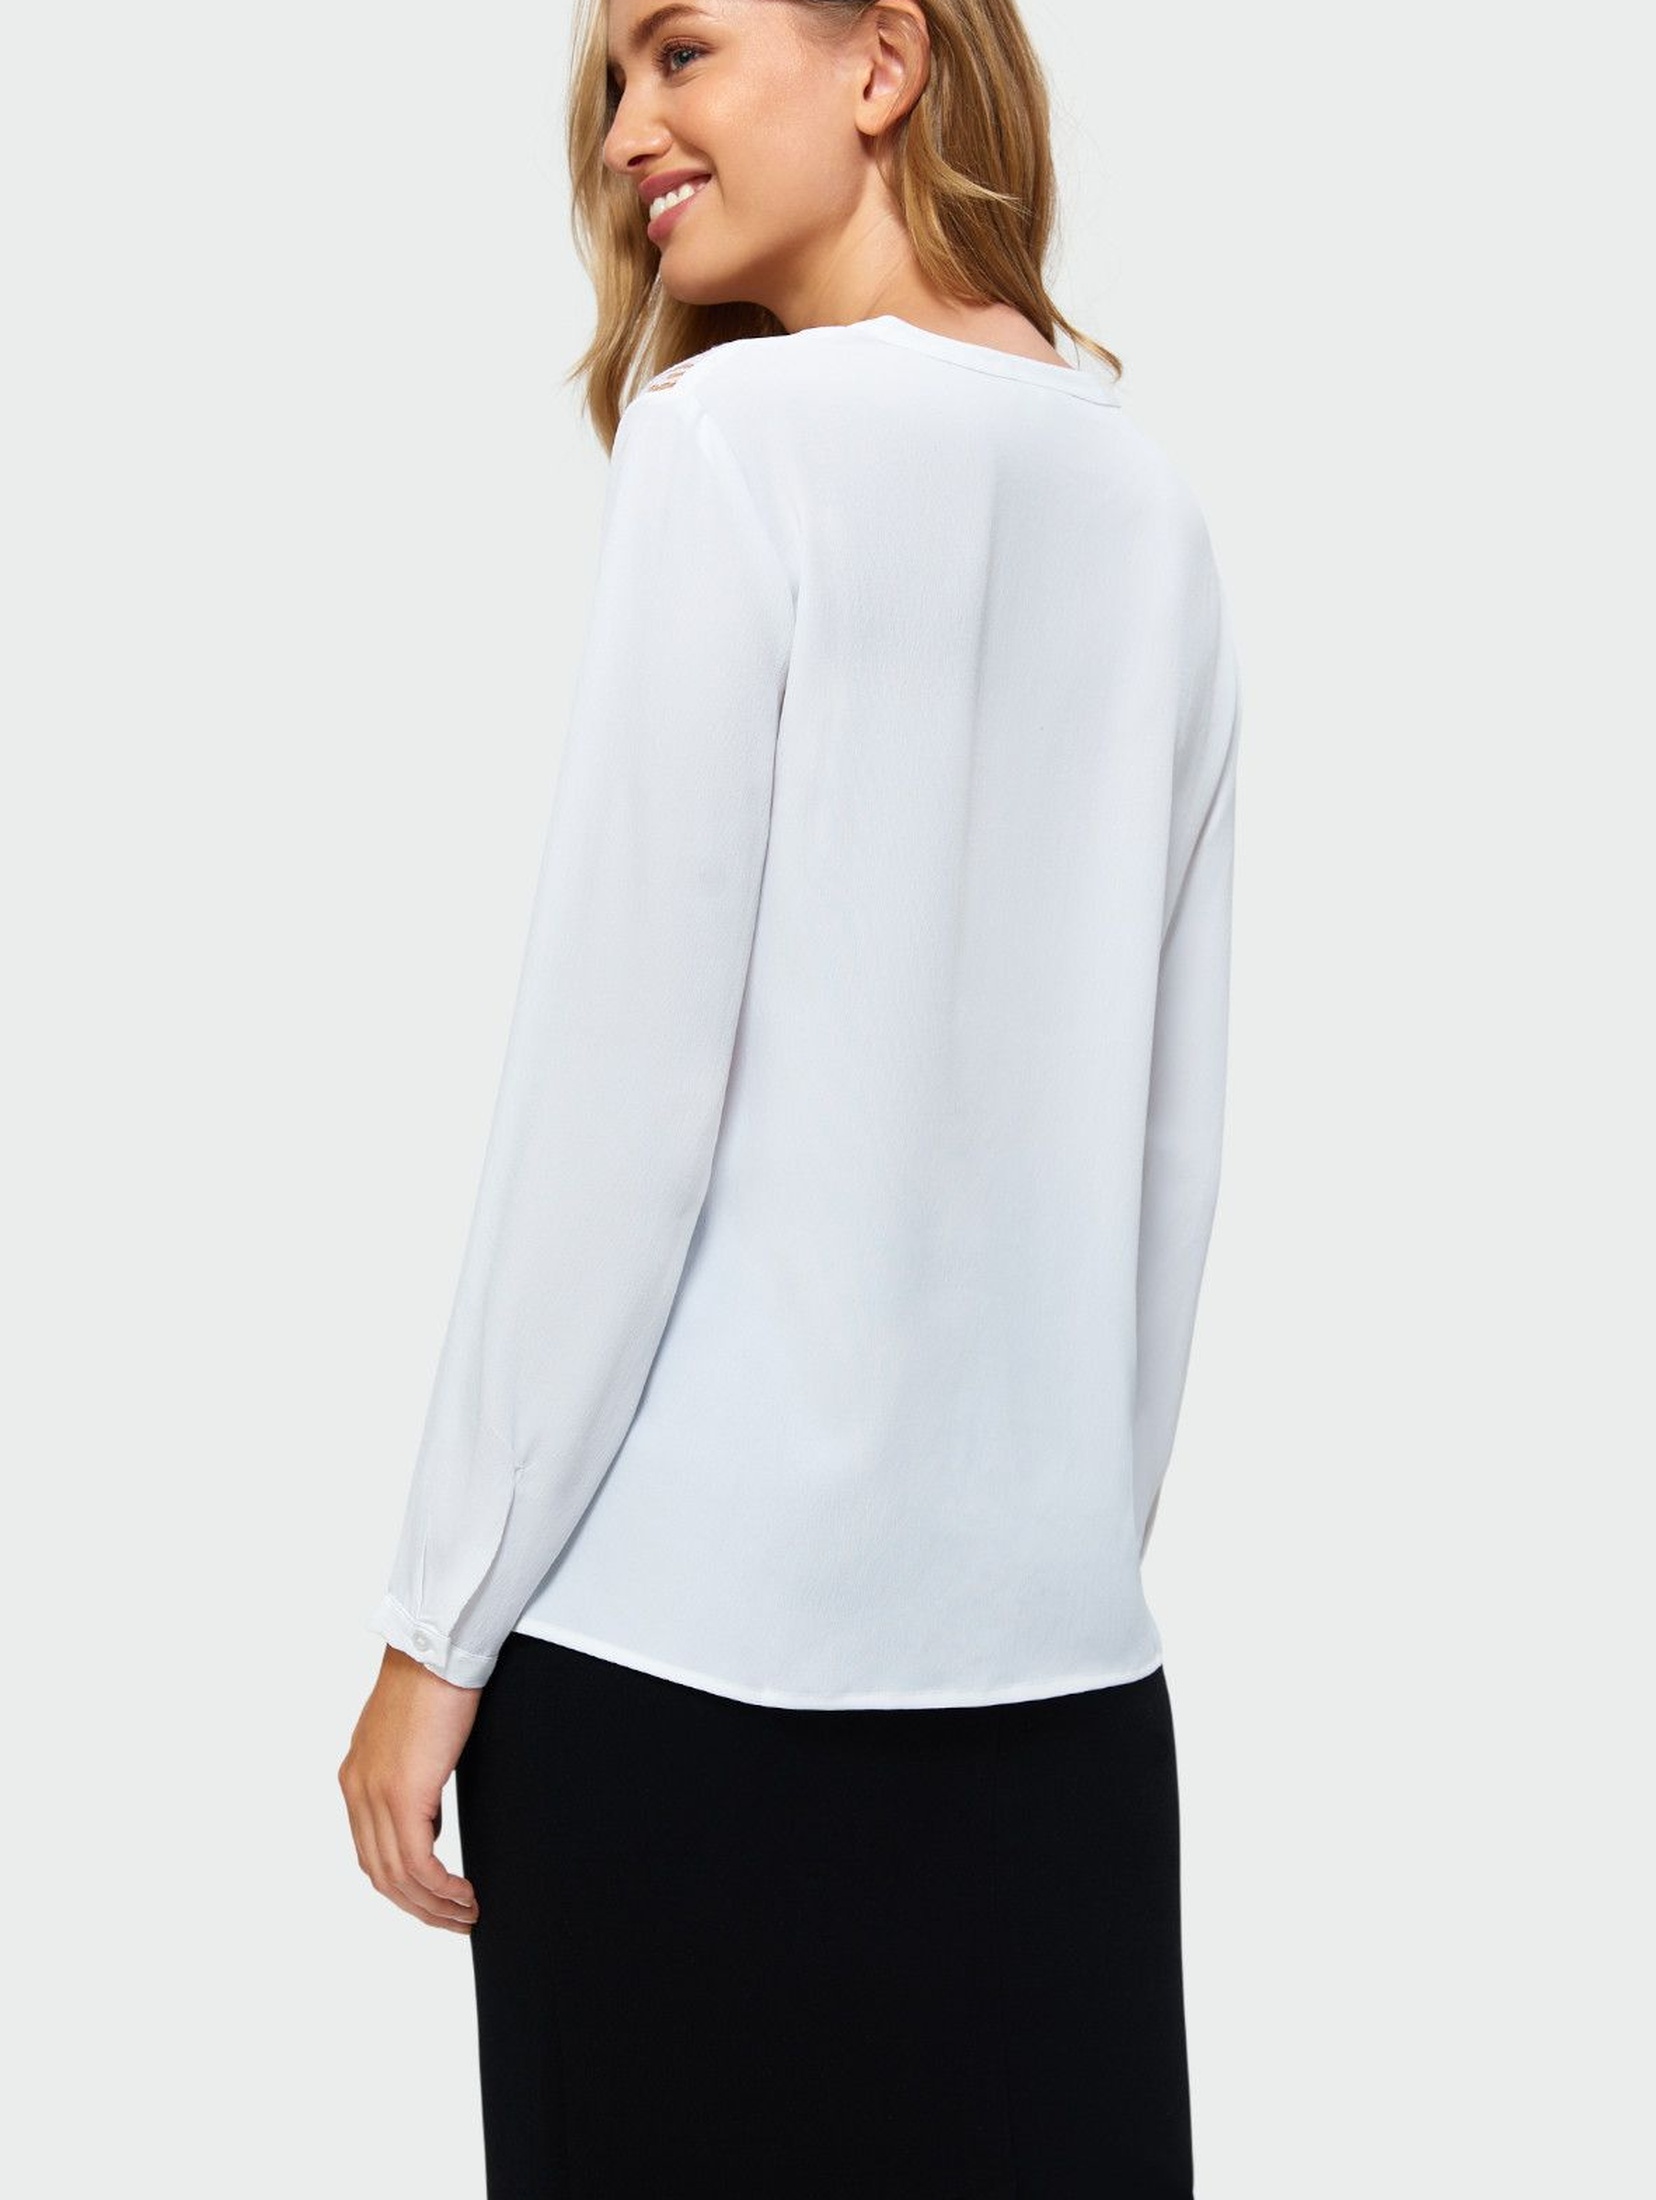 Elegancka bluzka - biała z koronkową górą